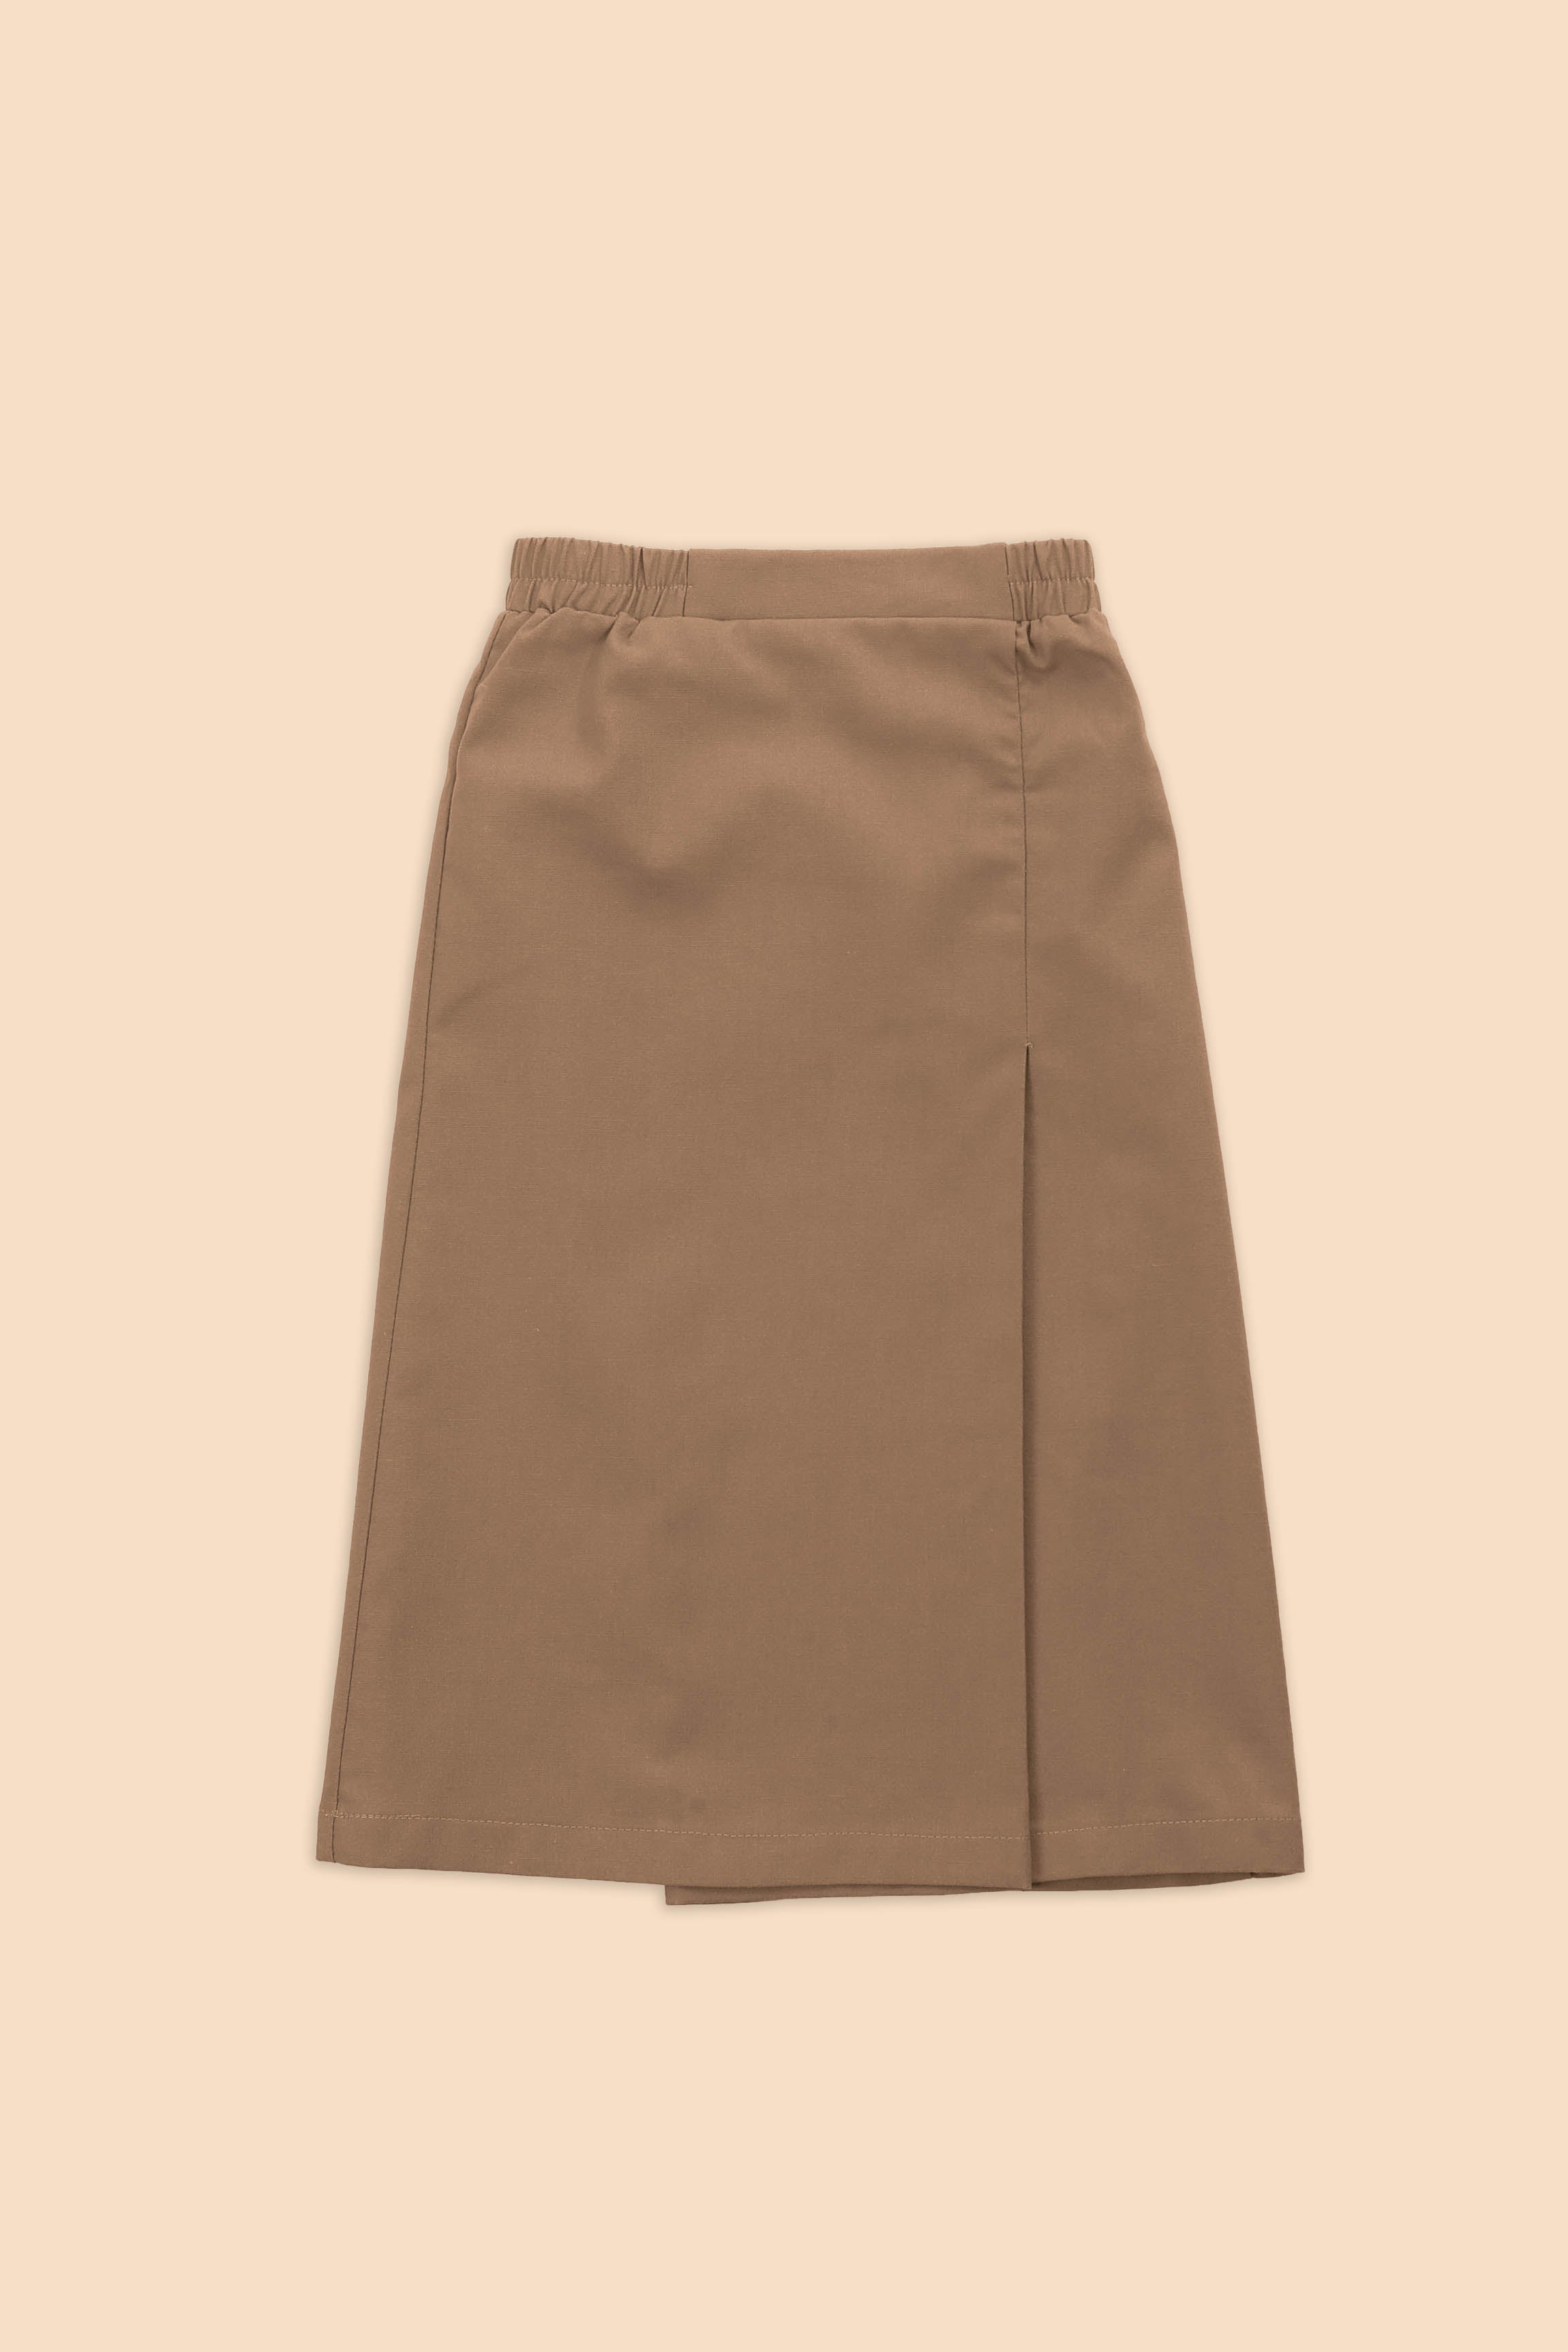 The Matahari Classic Skirt Olive Green